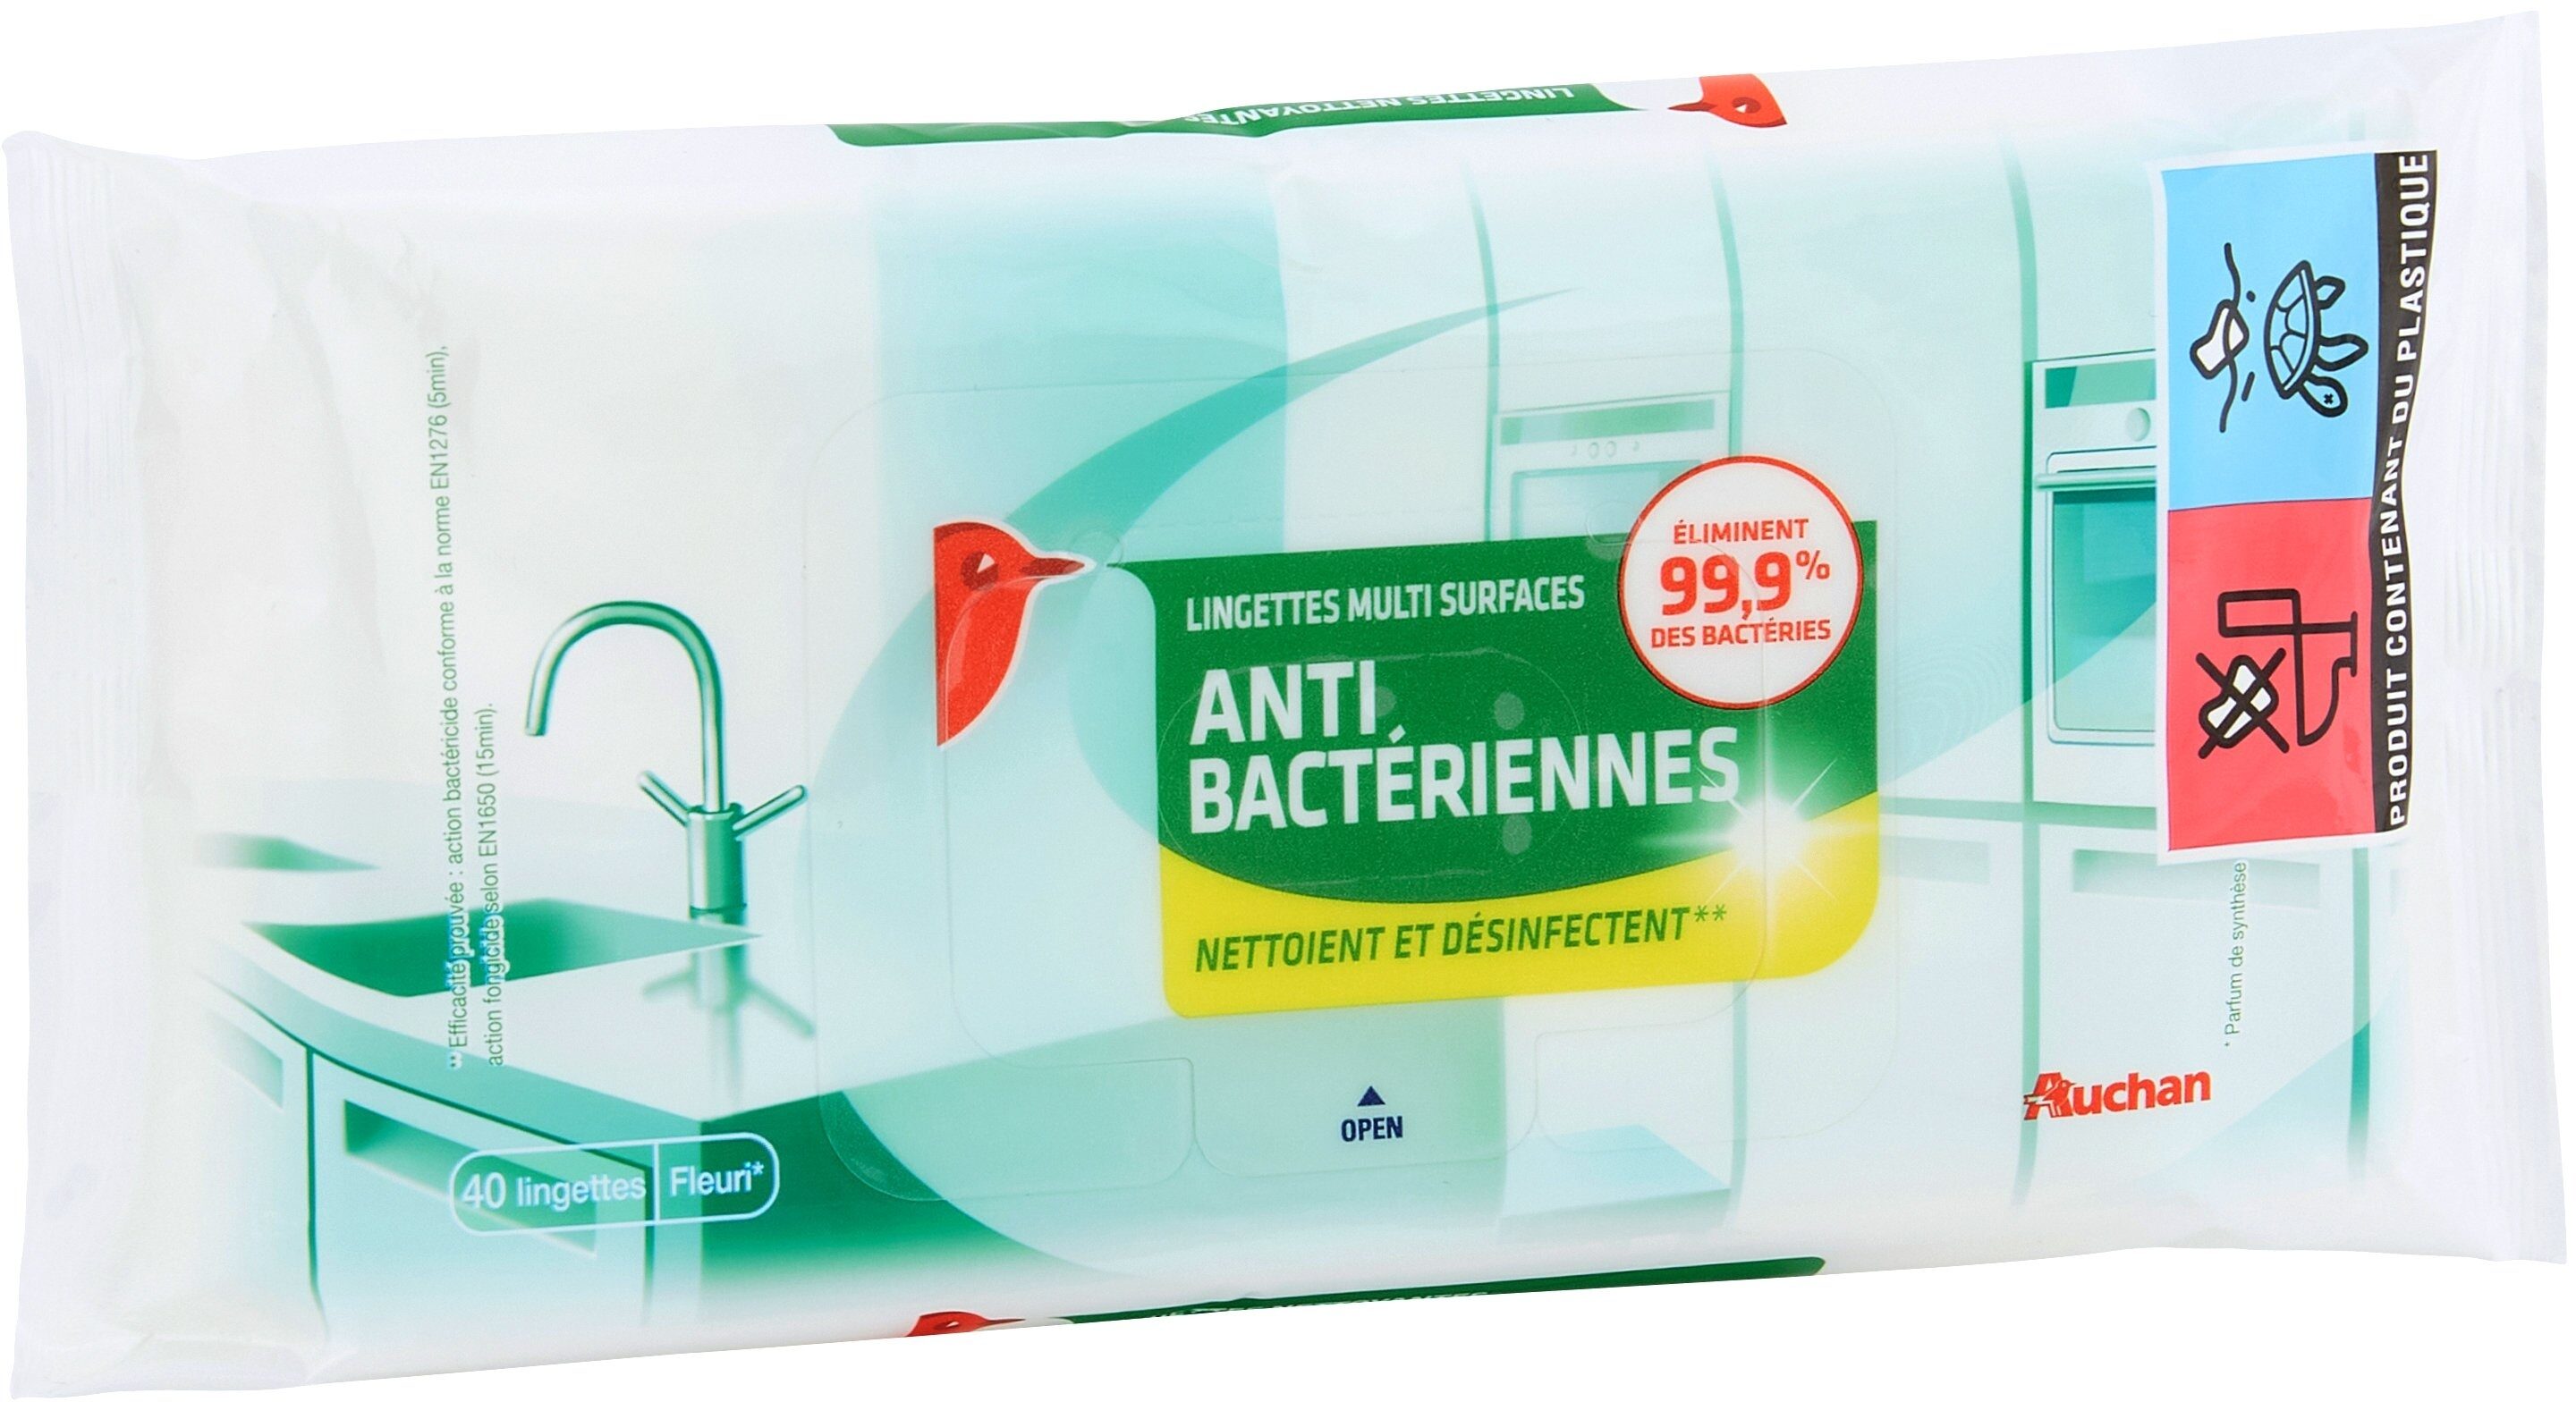 Lingettes nettoyantes multi-surfaces anti-bactériennes - Produit - fr